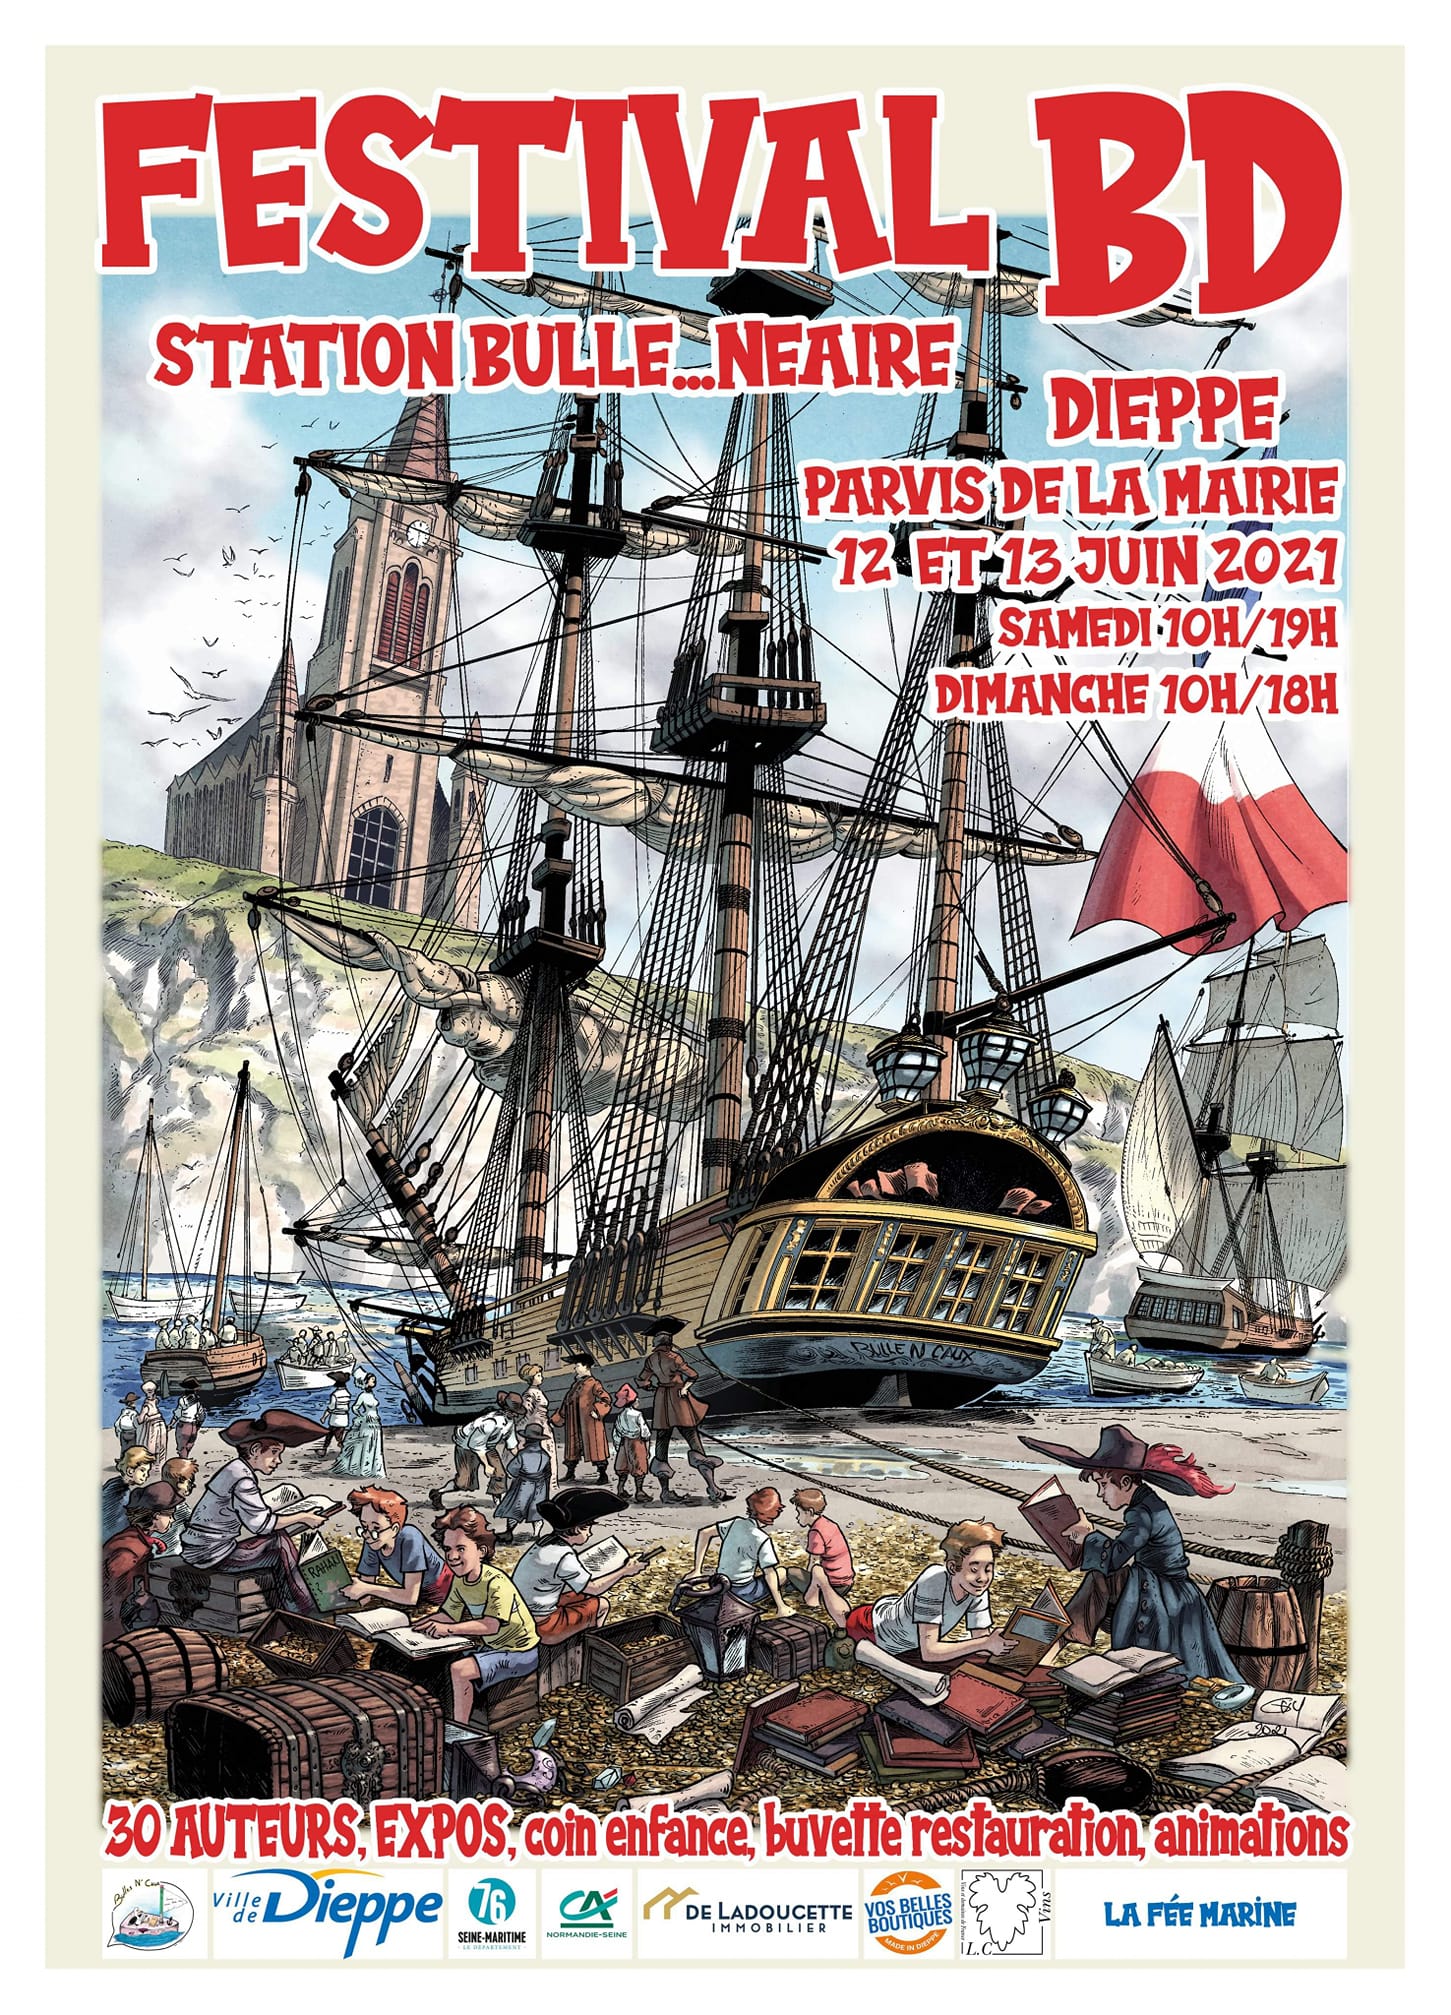 Un nouveau festival de BD à Dieppe